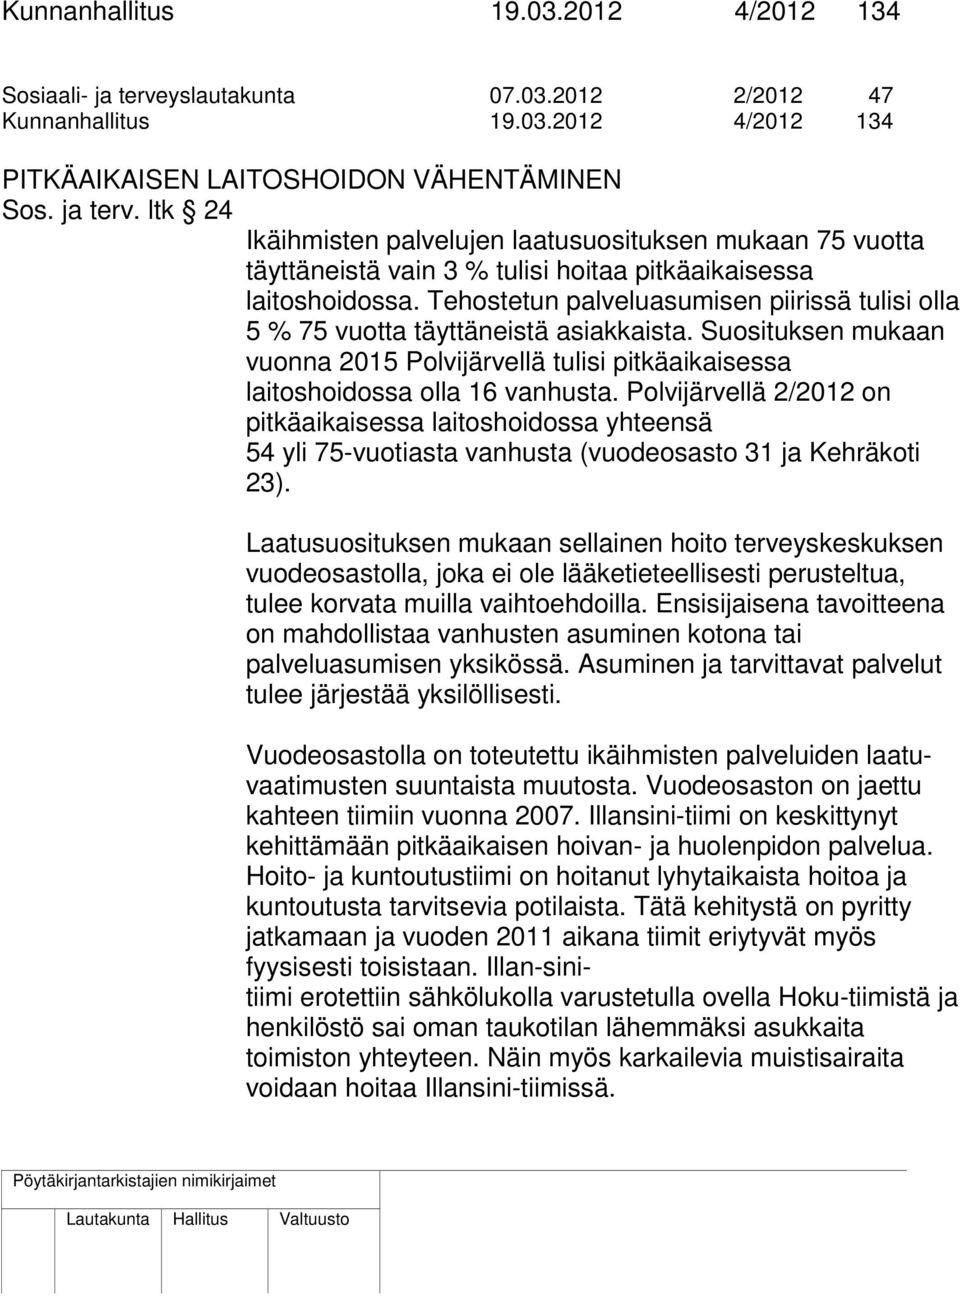 Polvijärvellä 2/2012 on pitkäaikaisessa laitoshoidossa yhteensä 54 yli 75-vuotiasta vanhusta (vuodeosasto 31 ja Kehräkoti 23).